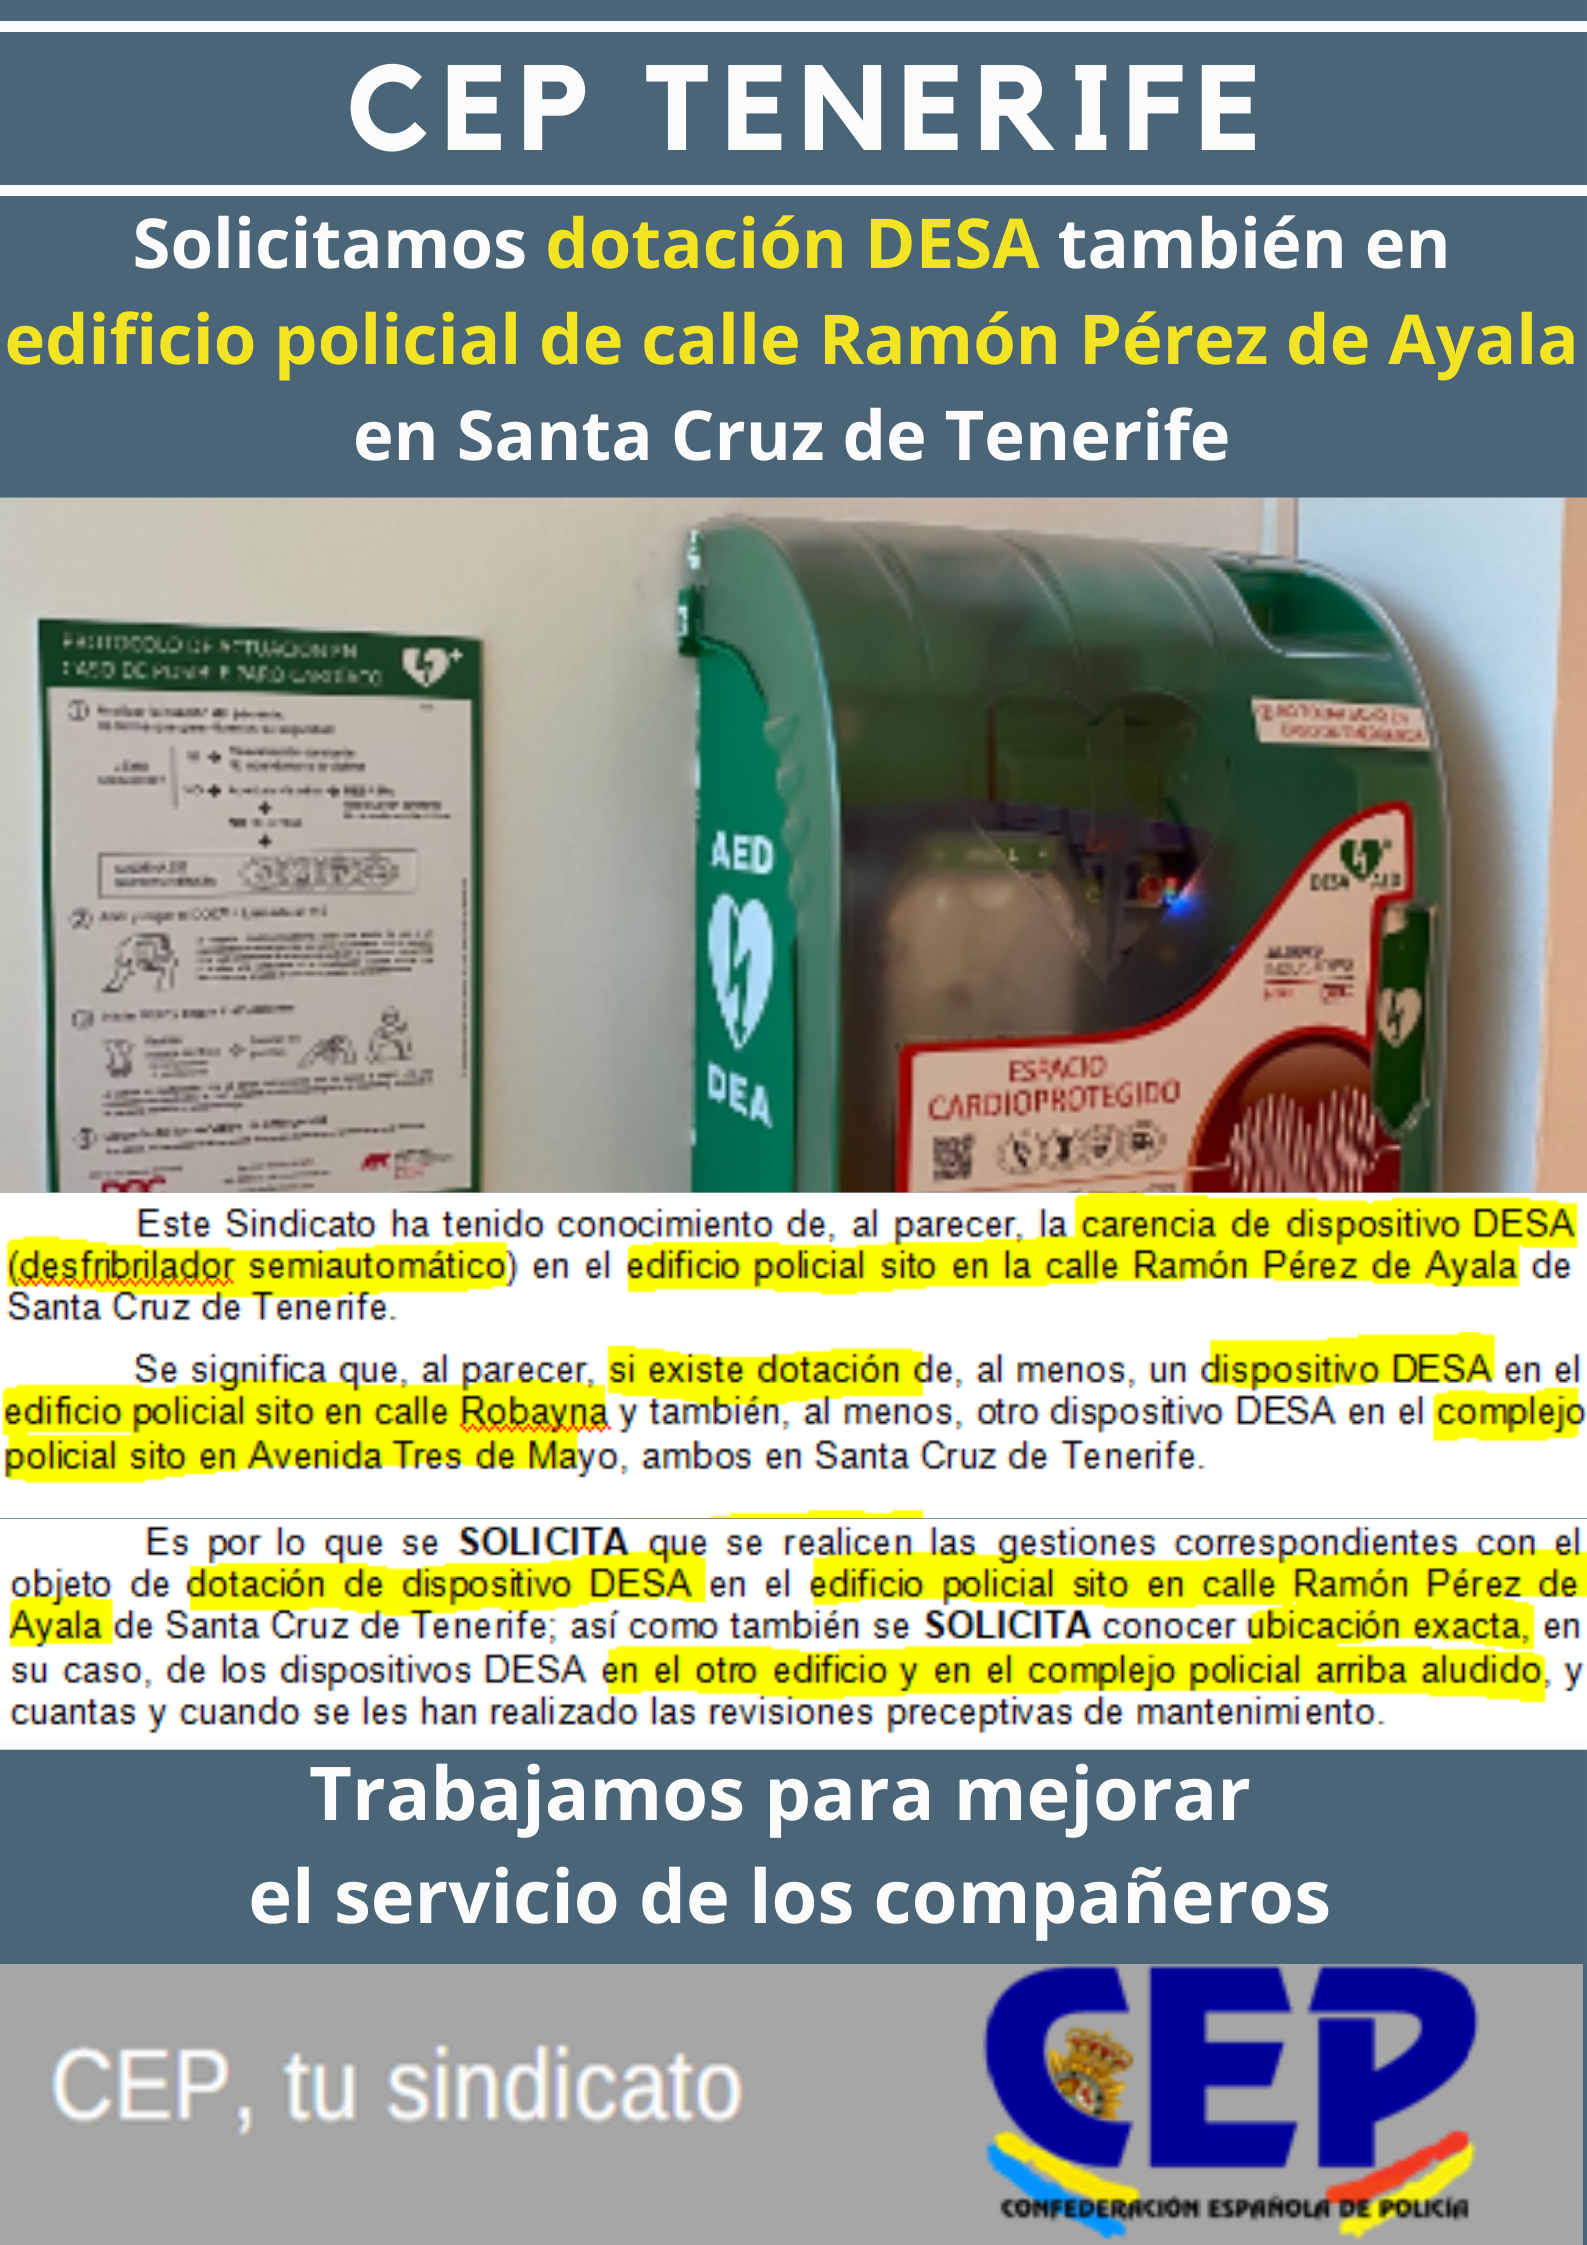 Solicitamos dotación DESA (desfibrilador semiautomático) también en edificio policial Ramón Pérez Ayala